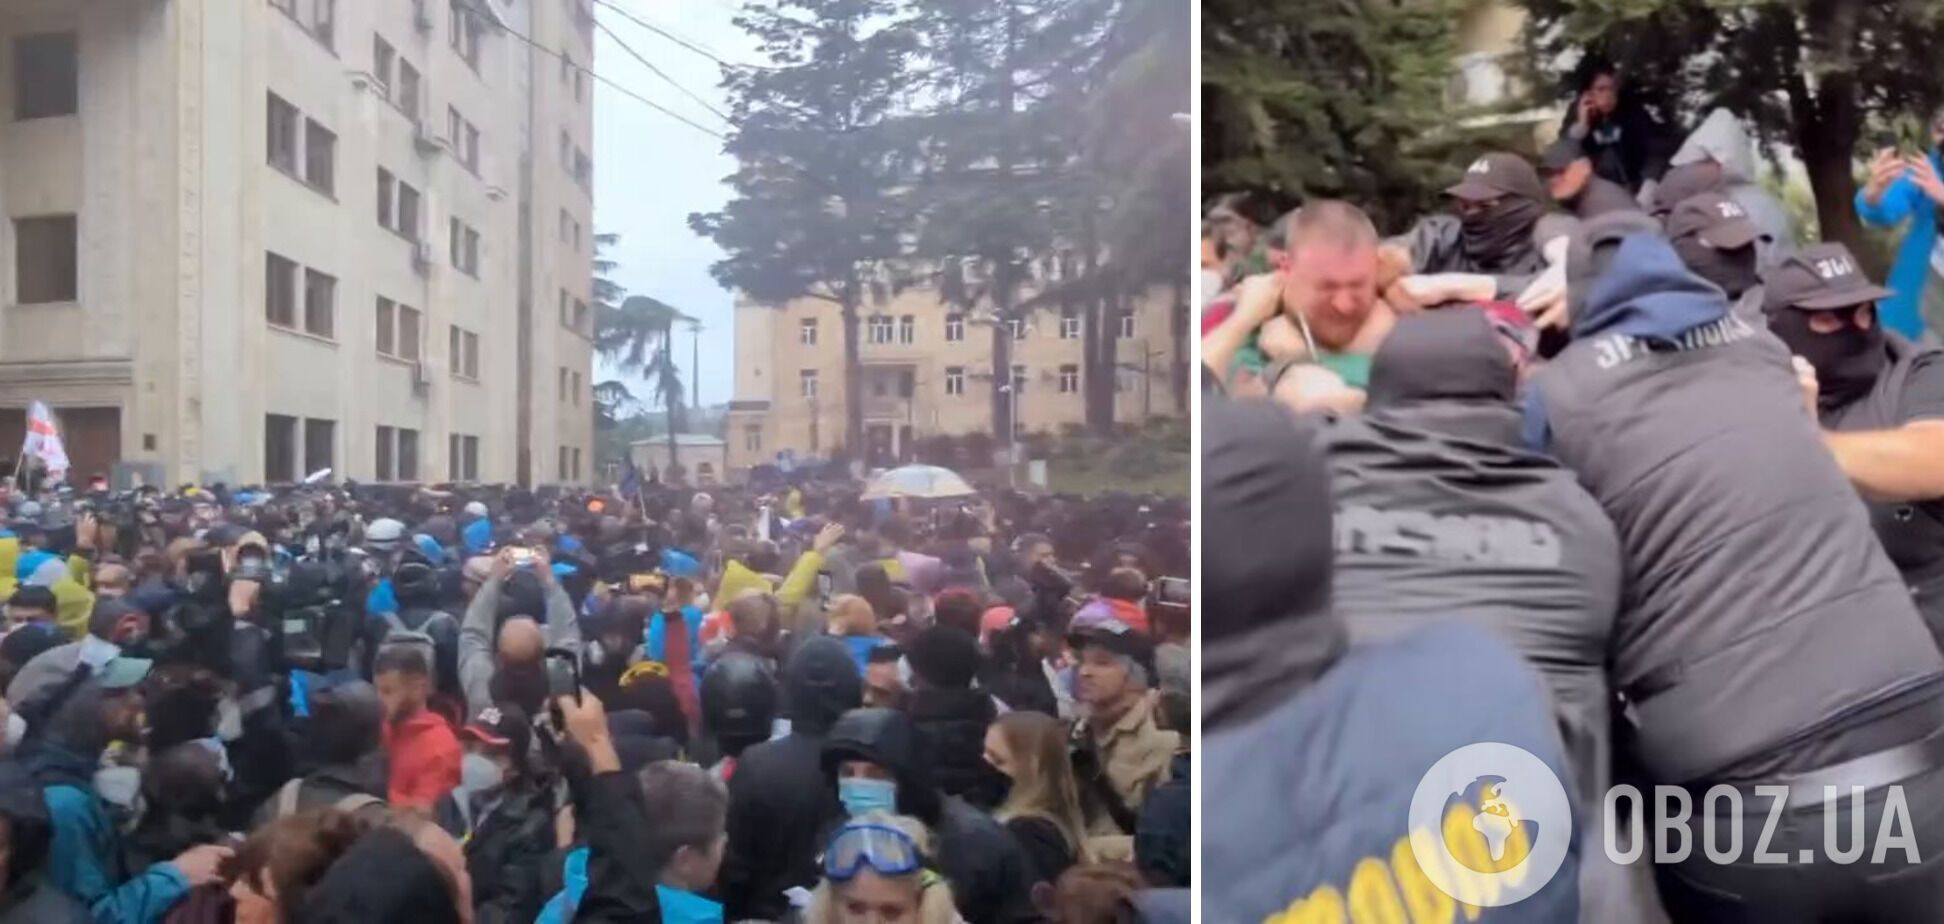 В Грузии начали разгон митинга против закона об "иноагентах", правоохранители применили силу. Фото и видео